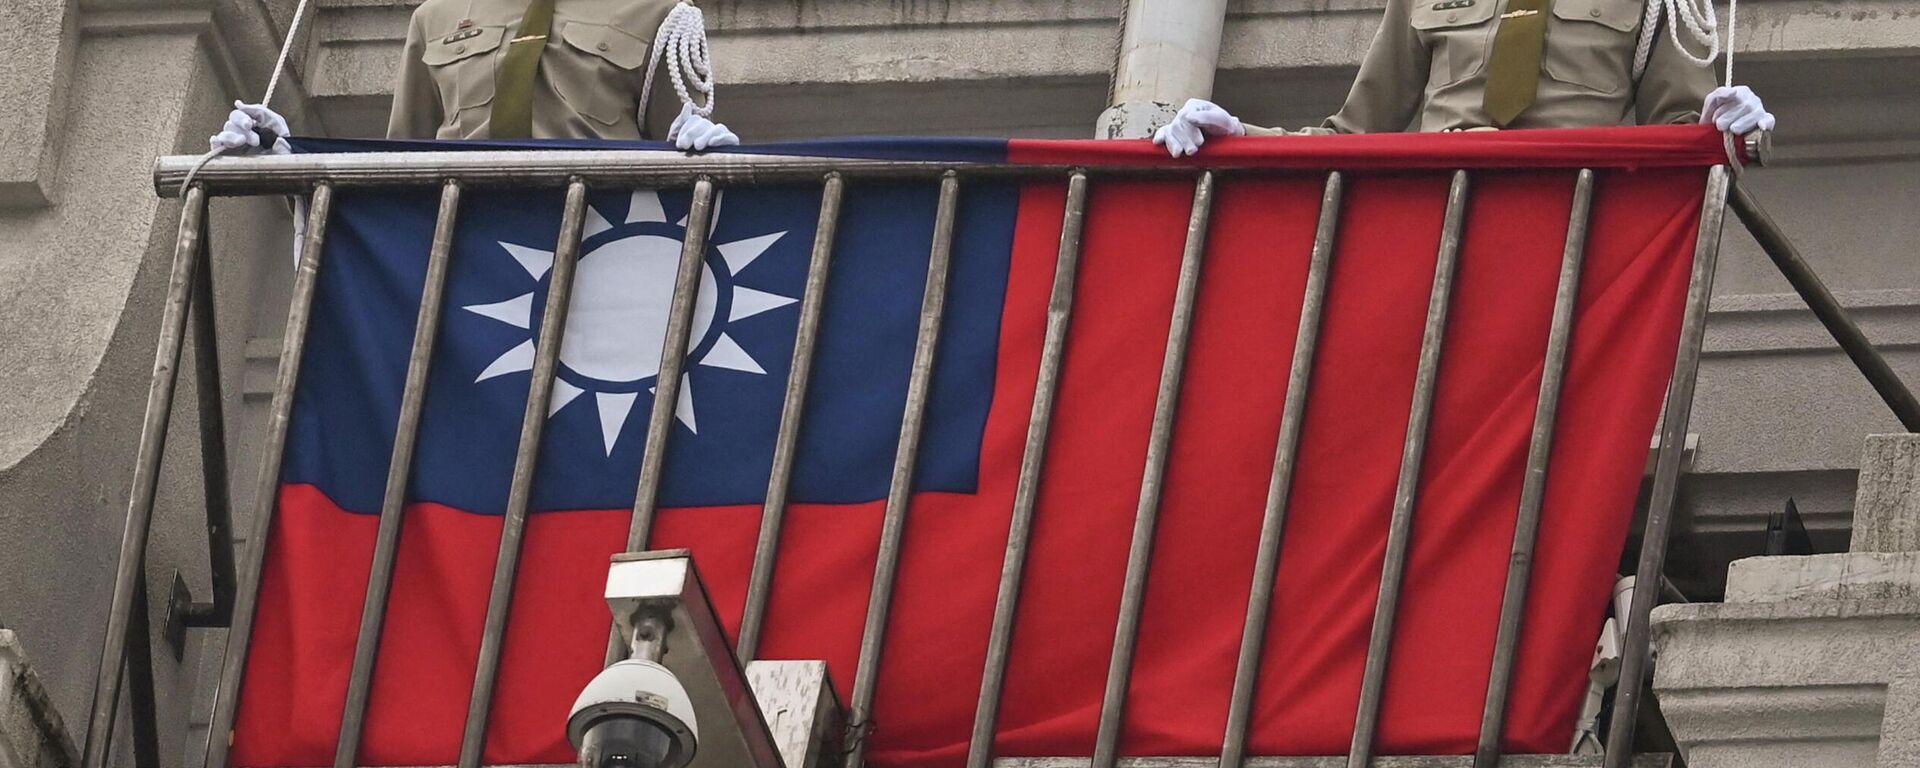 Policías militares resguardan una bandera de Taiwán. - Sputnik Mundo, 1920, 09.12.2022